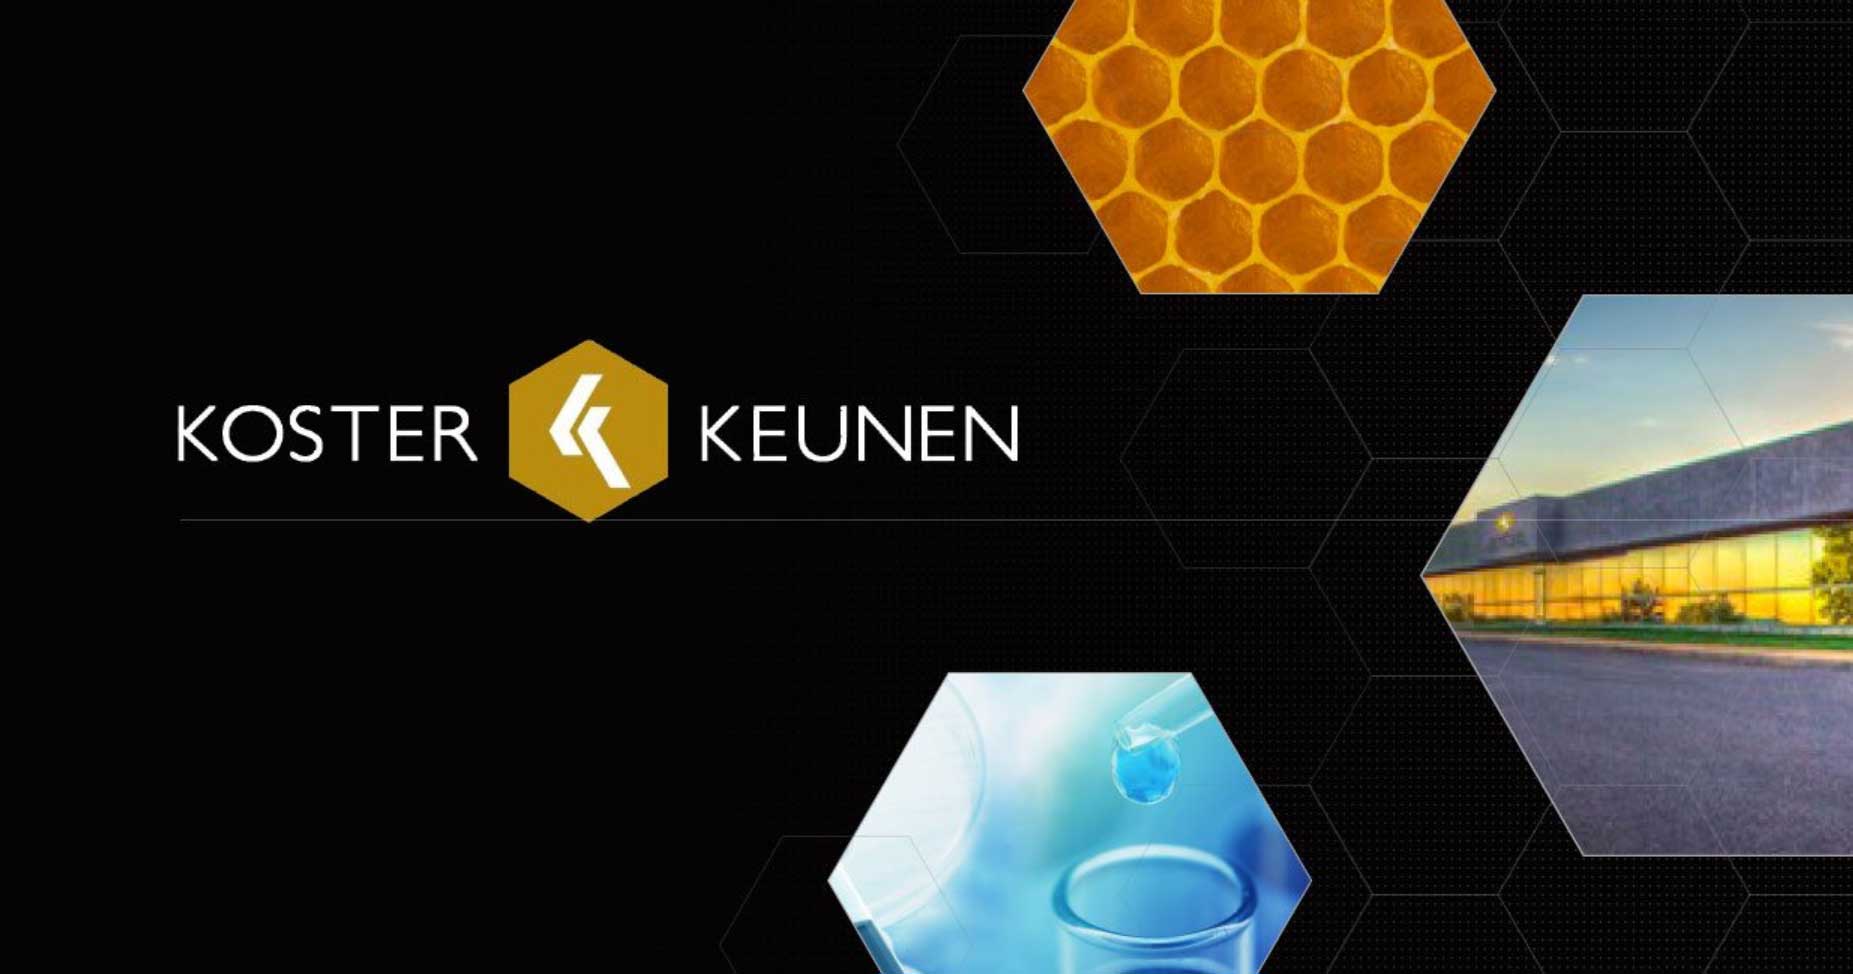 Triple Helix Deploys 70” Interactive Touchscreen For Manufacturer Koster Keunen